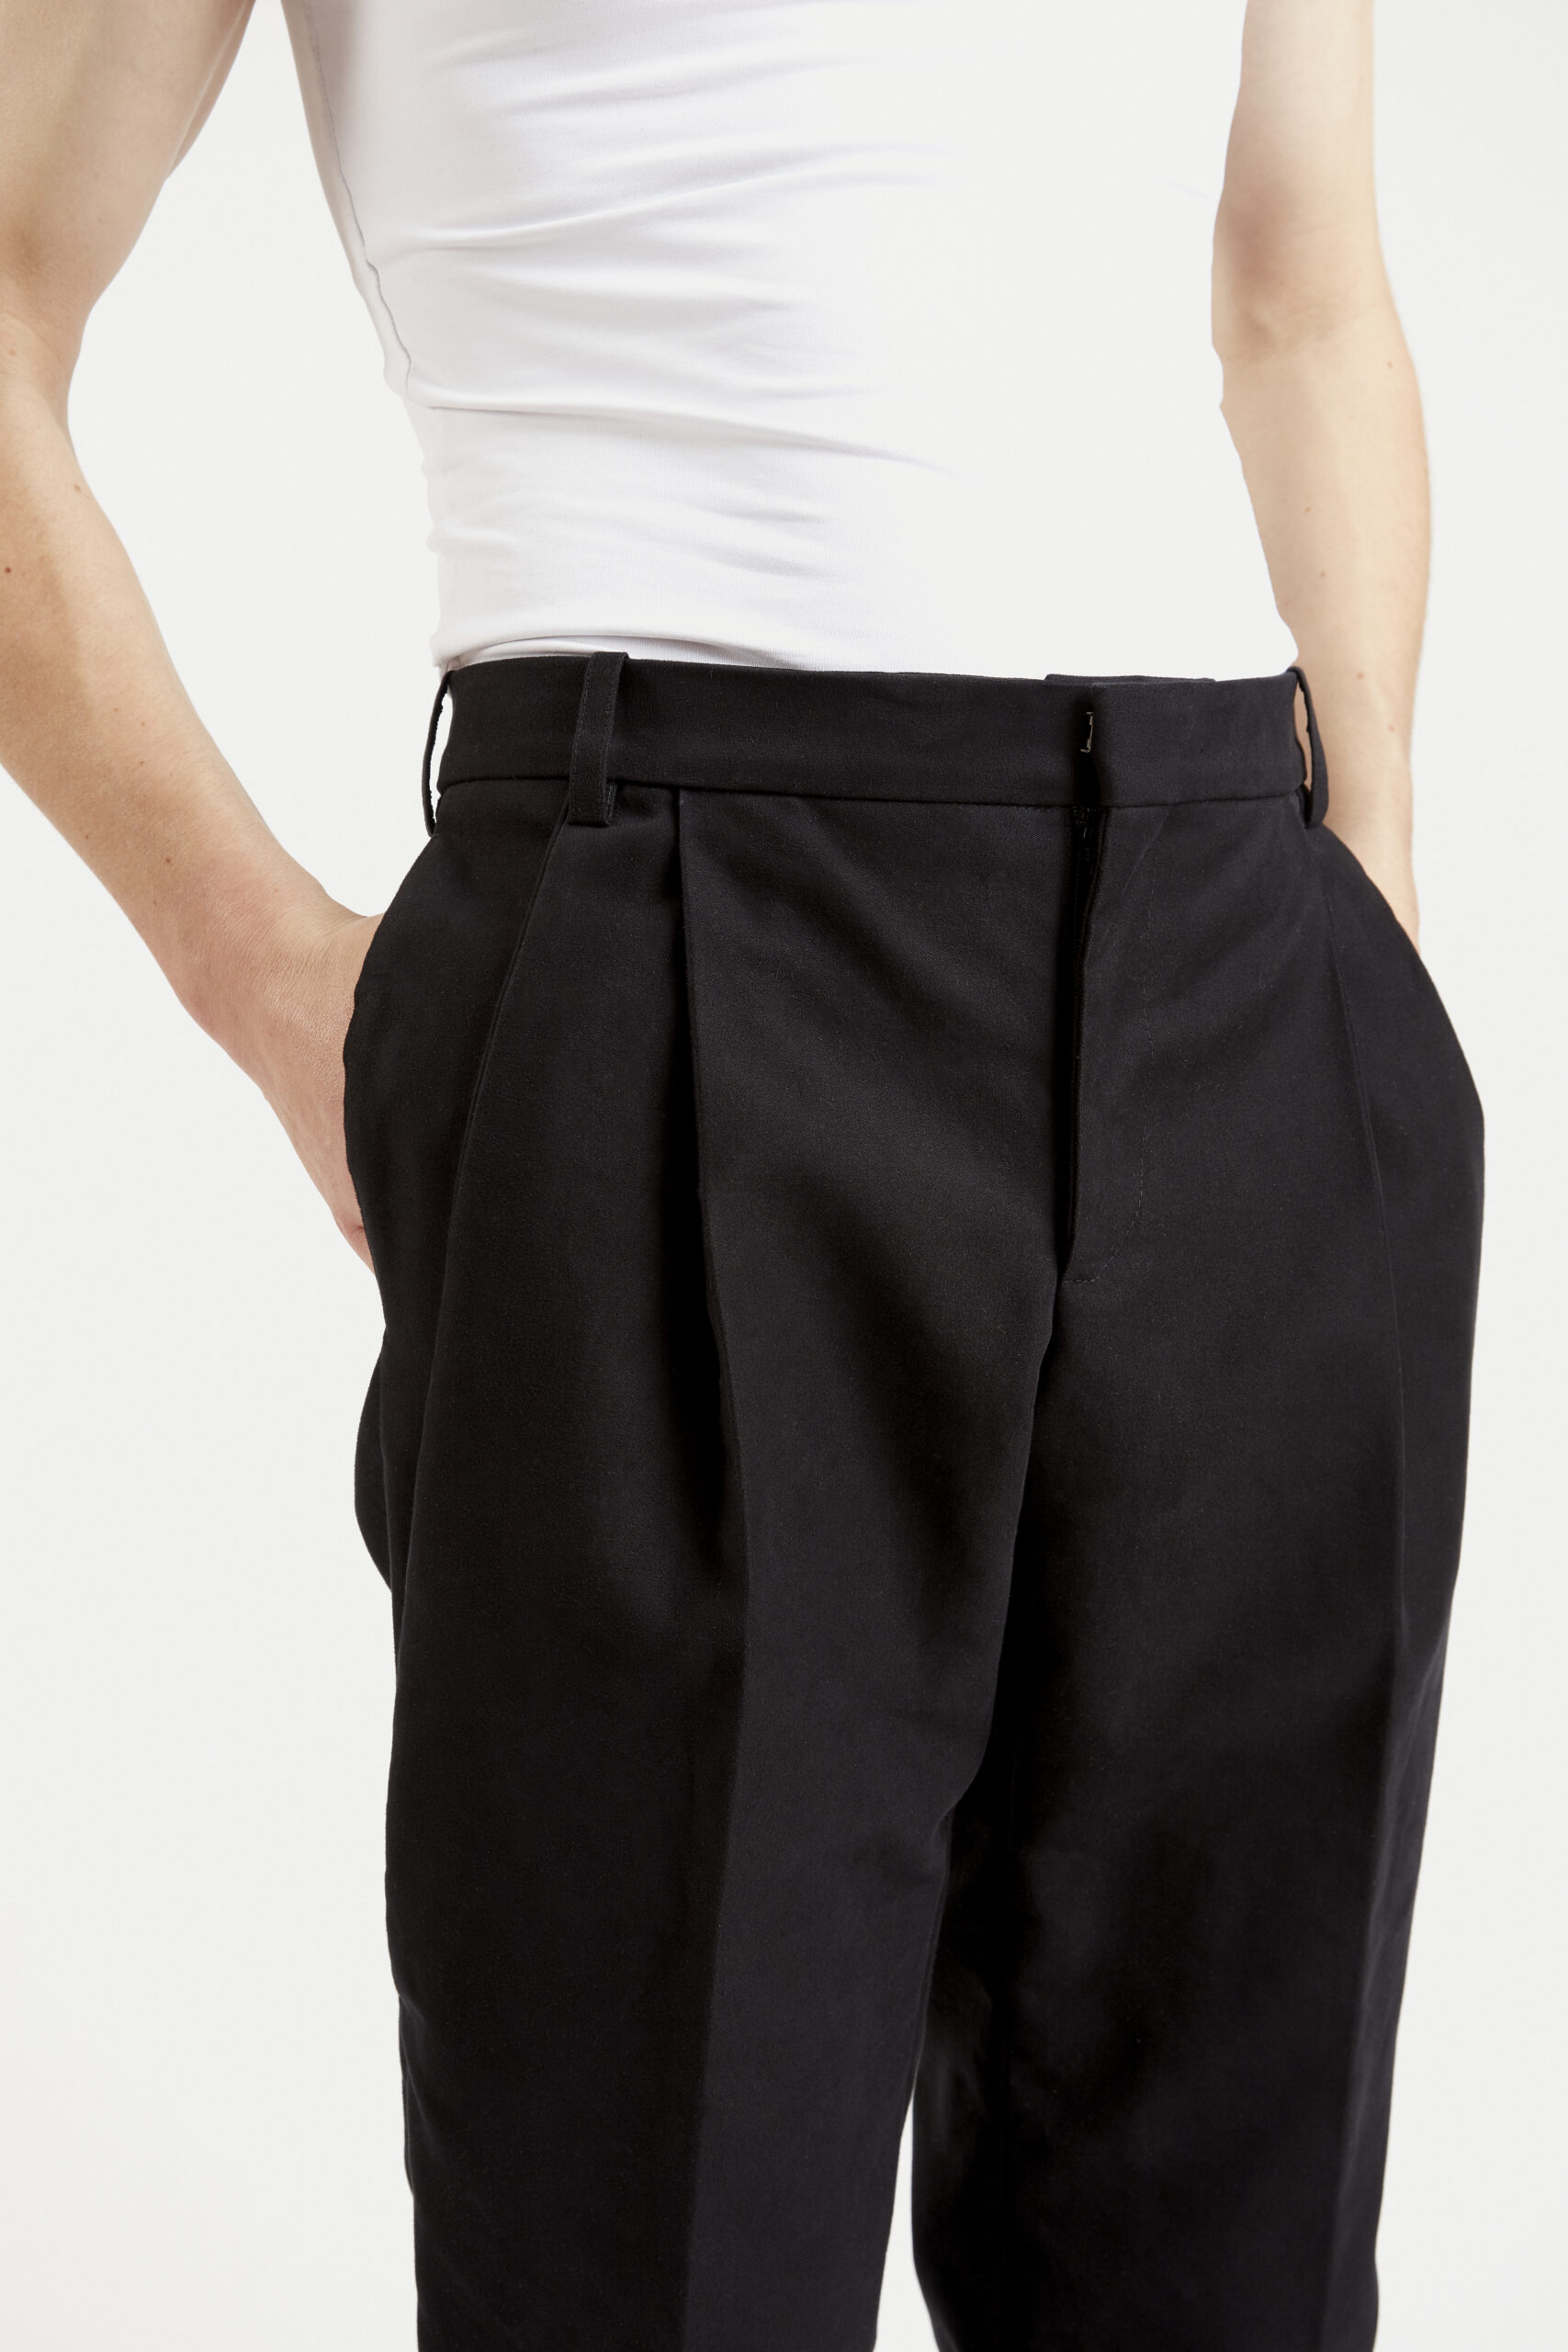 hi-pantalon-costume-classique-confort-à-pli-design-tendance-fashion-coton-japonais-noir-hiver-29thoctober-5